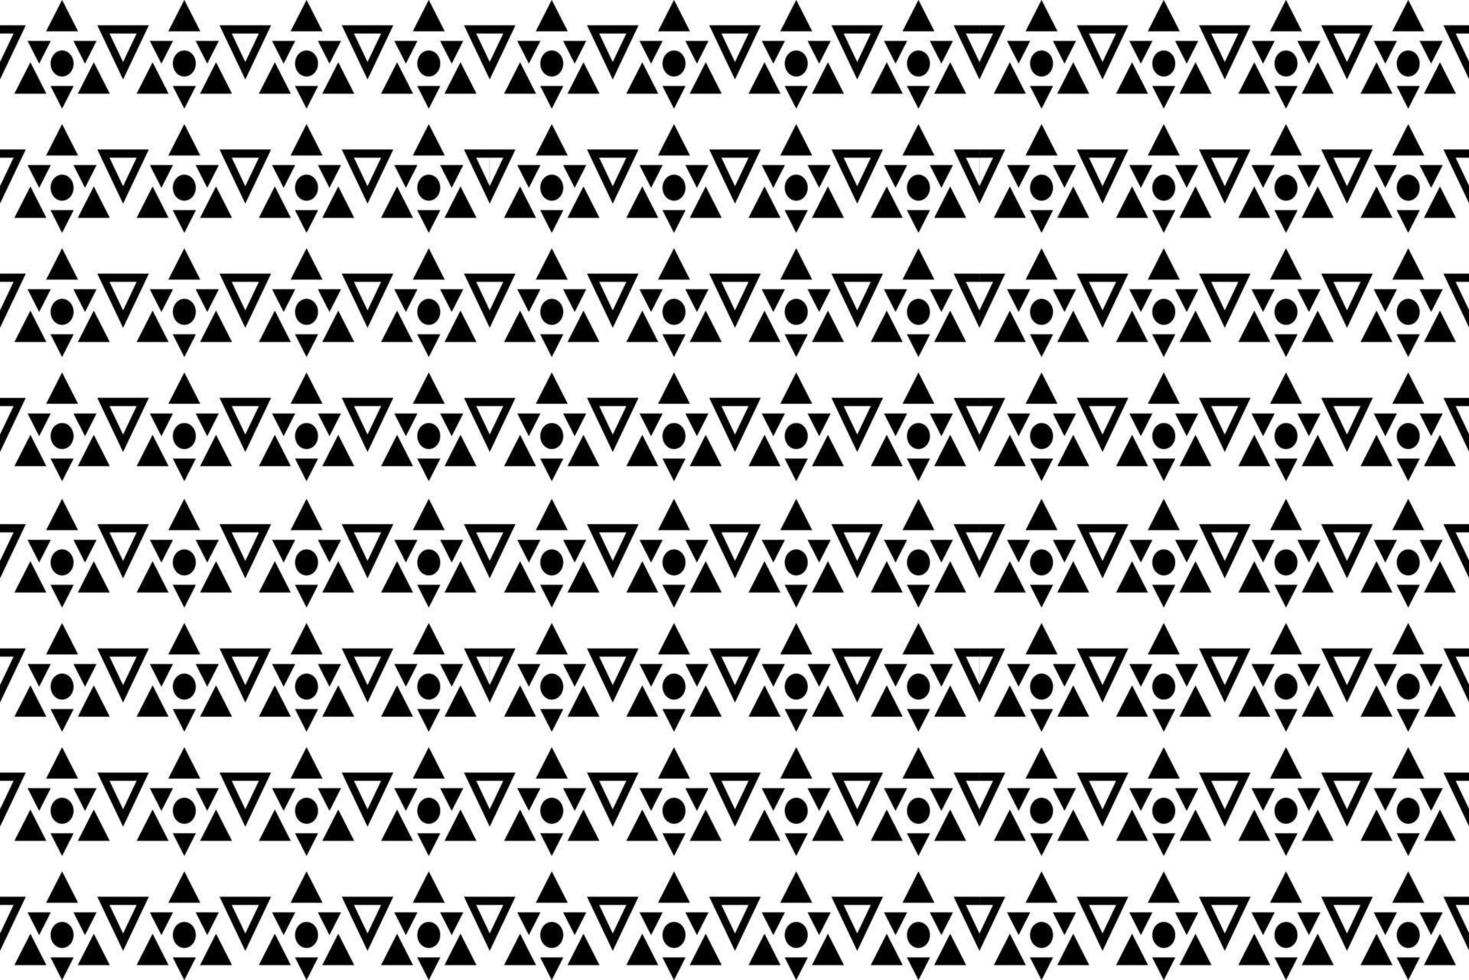 abstraktes Schwarz-Weiß-Muster. einfarbiges nahtloses geometrisches Muster. sich wiederholende Formen, geometrische Elemente. vektor